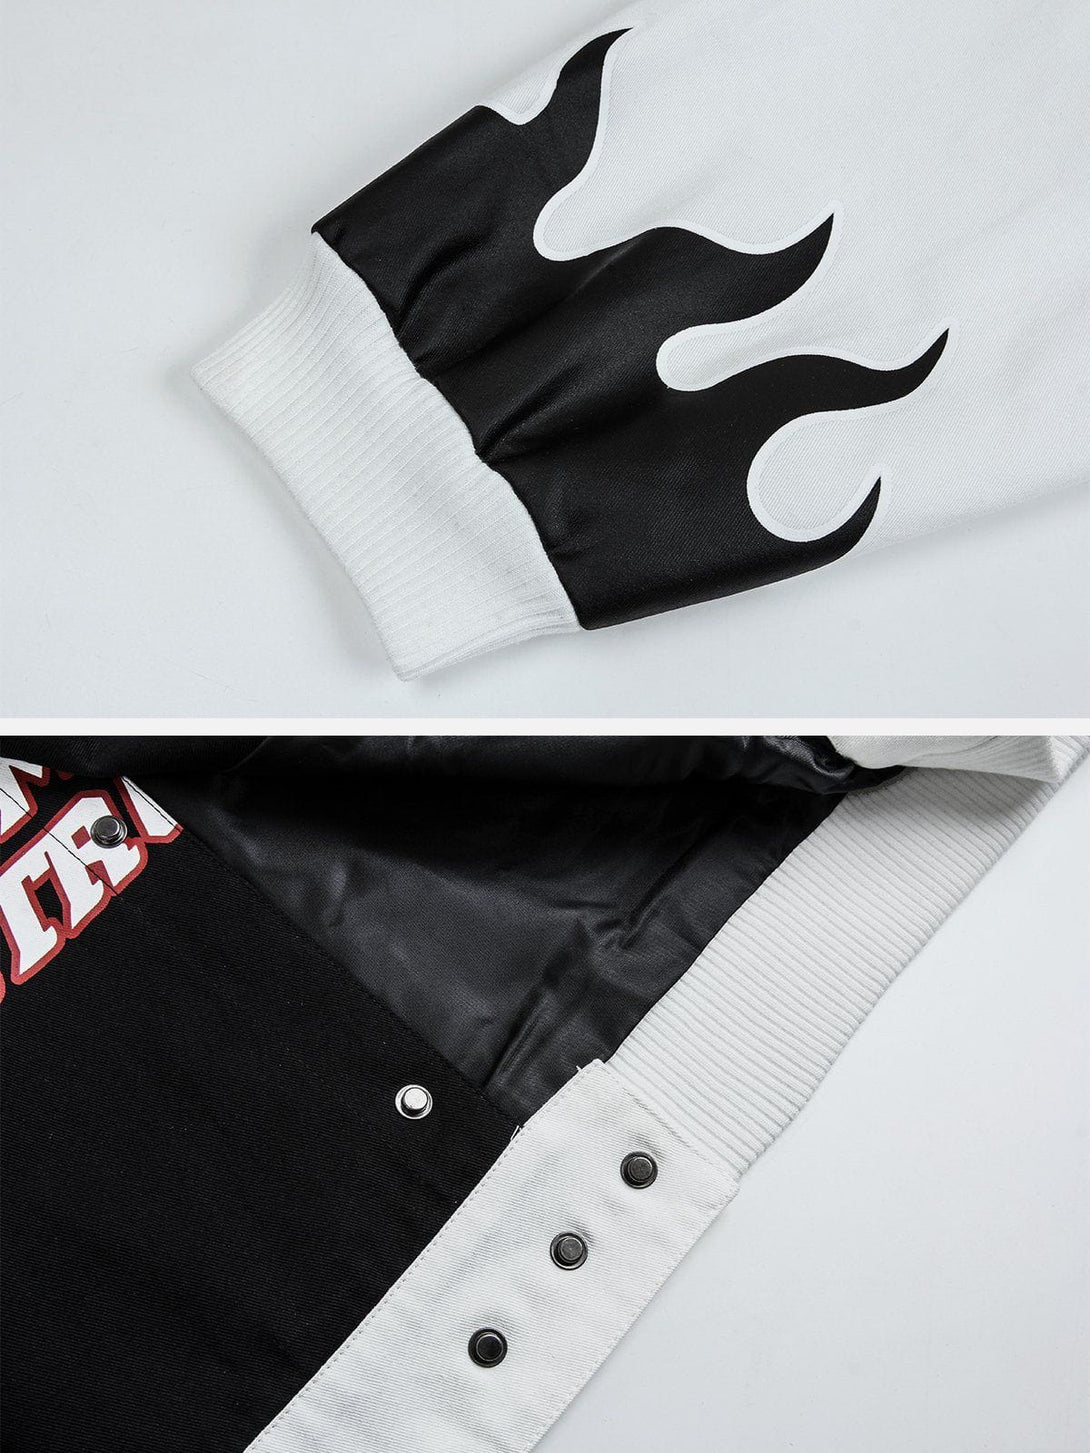 Majesda® - Contrast Flame Racing Jacket outfit ideas, streetwear fashion - majesda.com